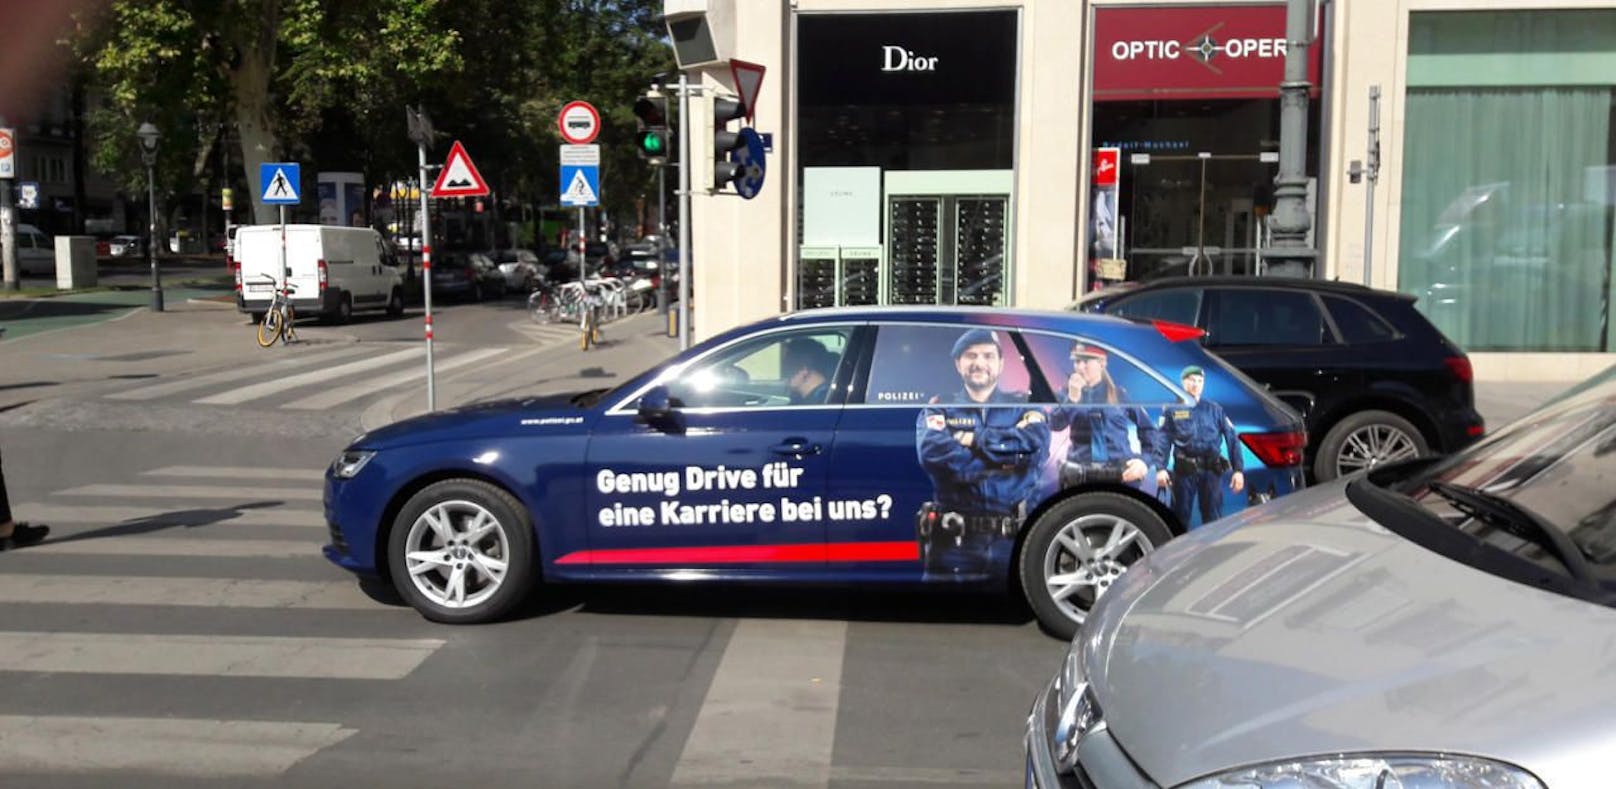 Erwischt: Auto mit Polizei-Aufdruck fuhr am Wiener Opernring über die Haltelinie hinaus.